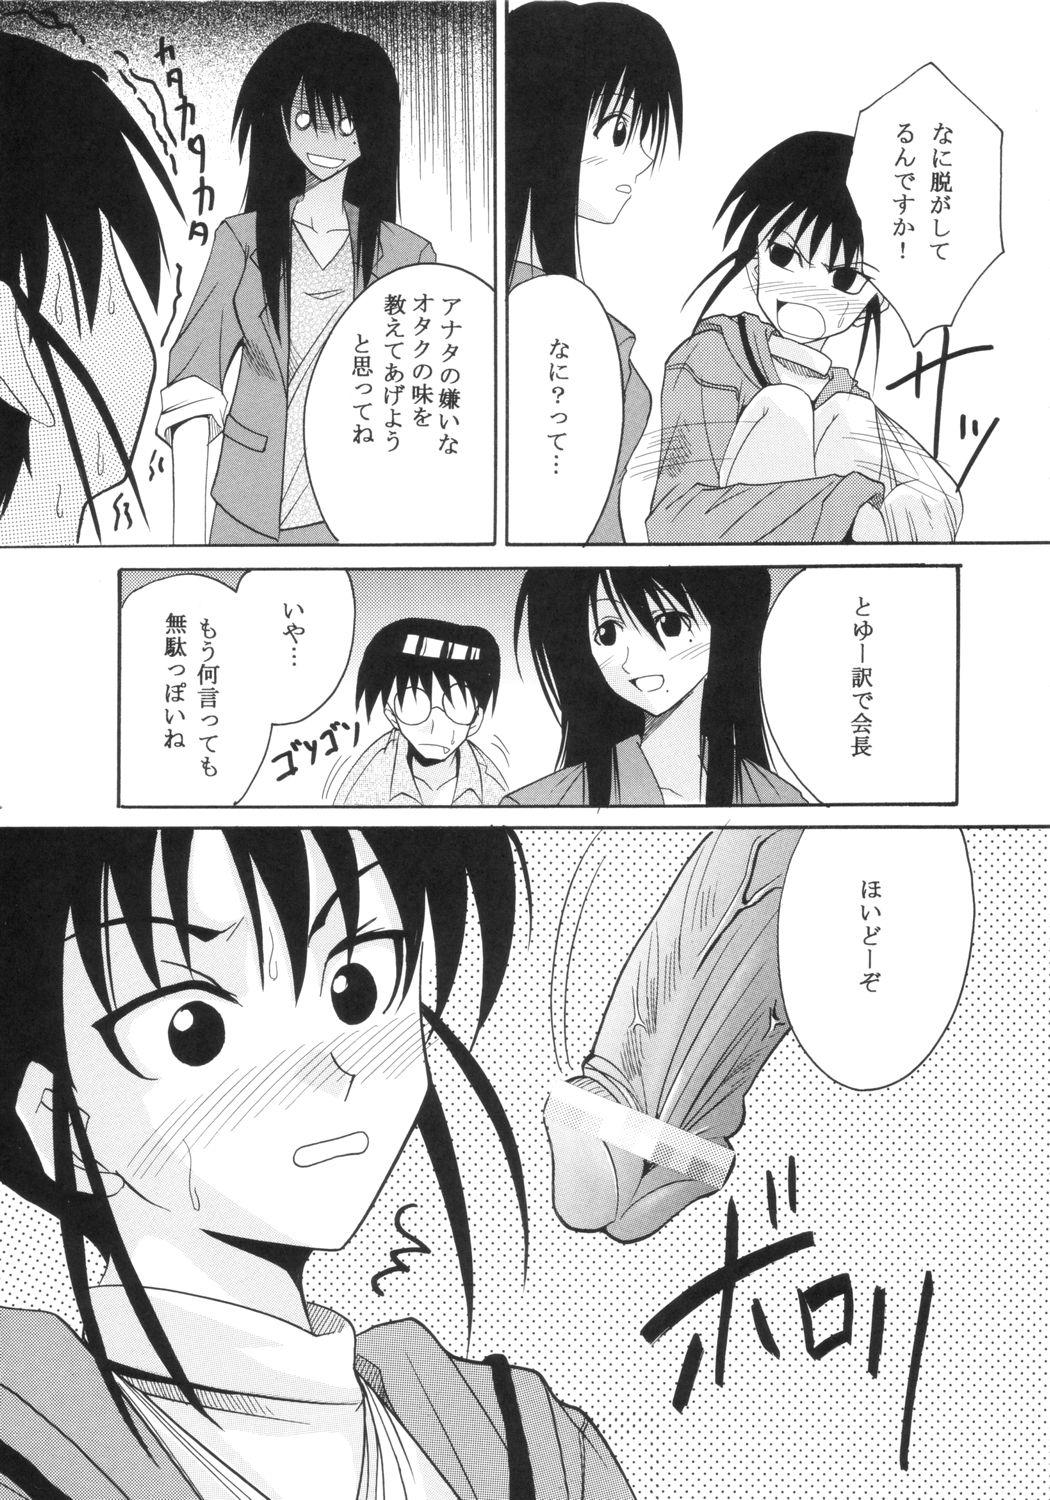 Piroca GenCKen 6 - Genshiken Ex Girlfriend - Page 8